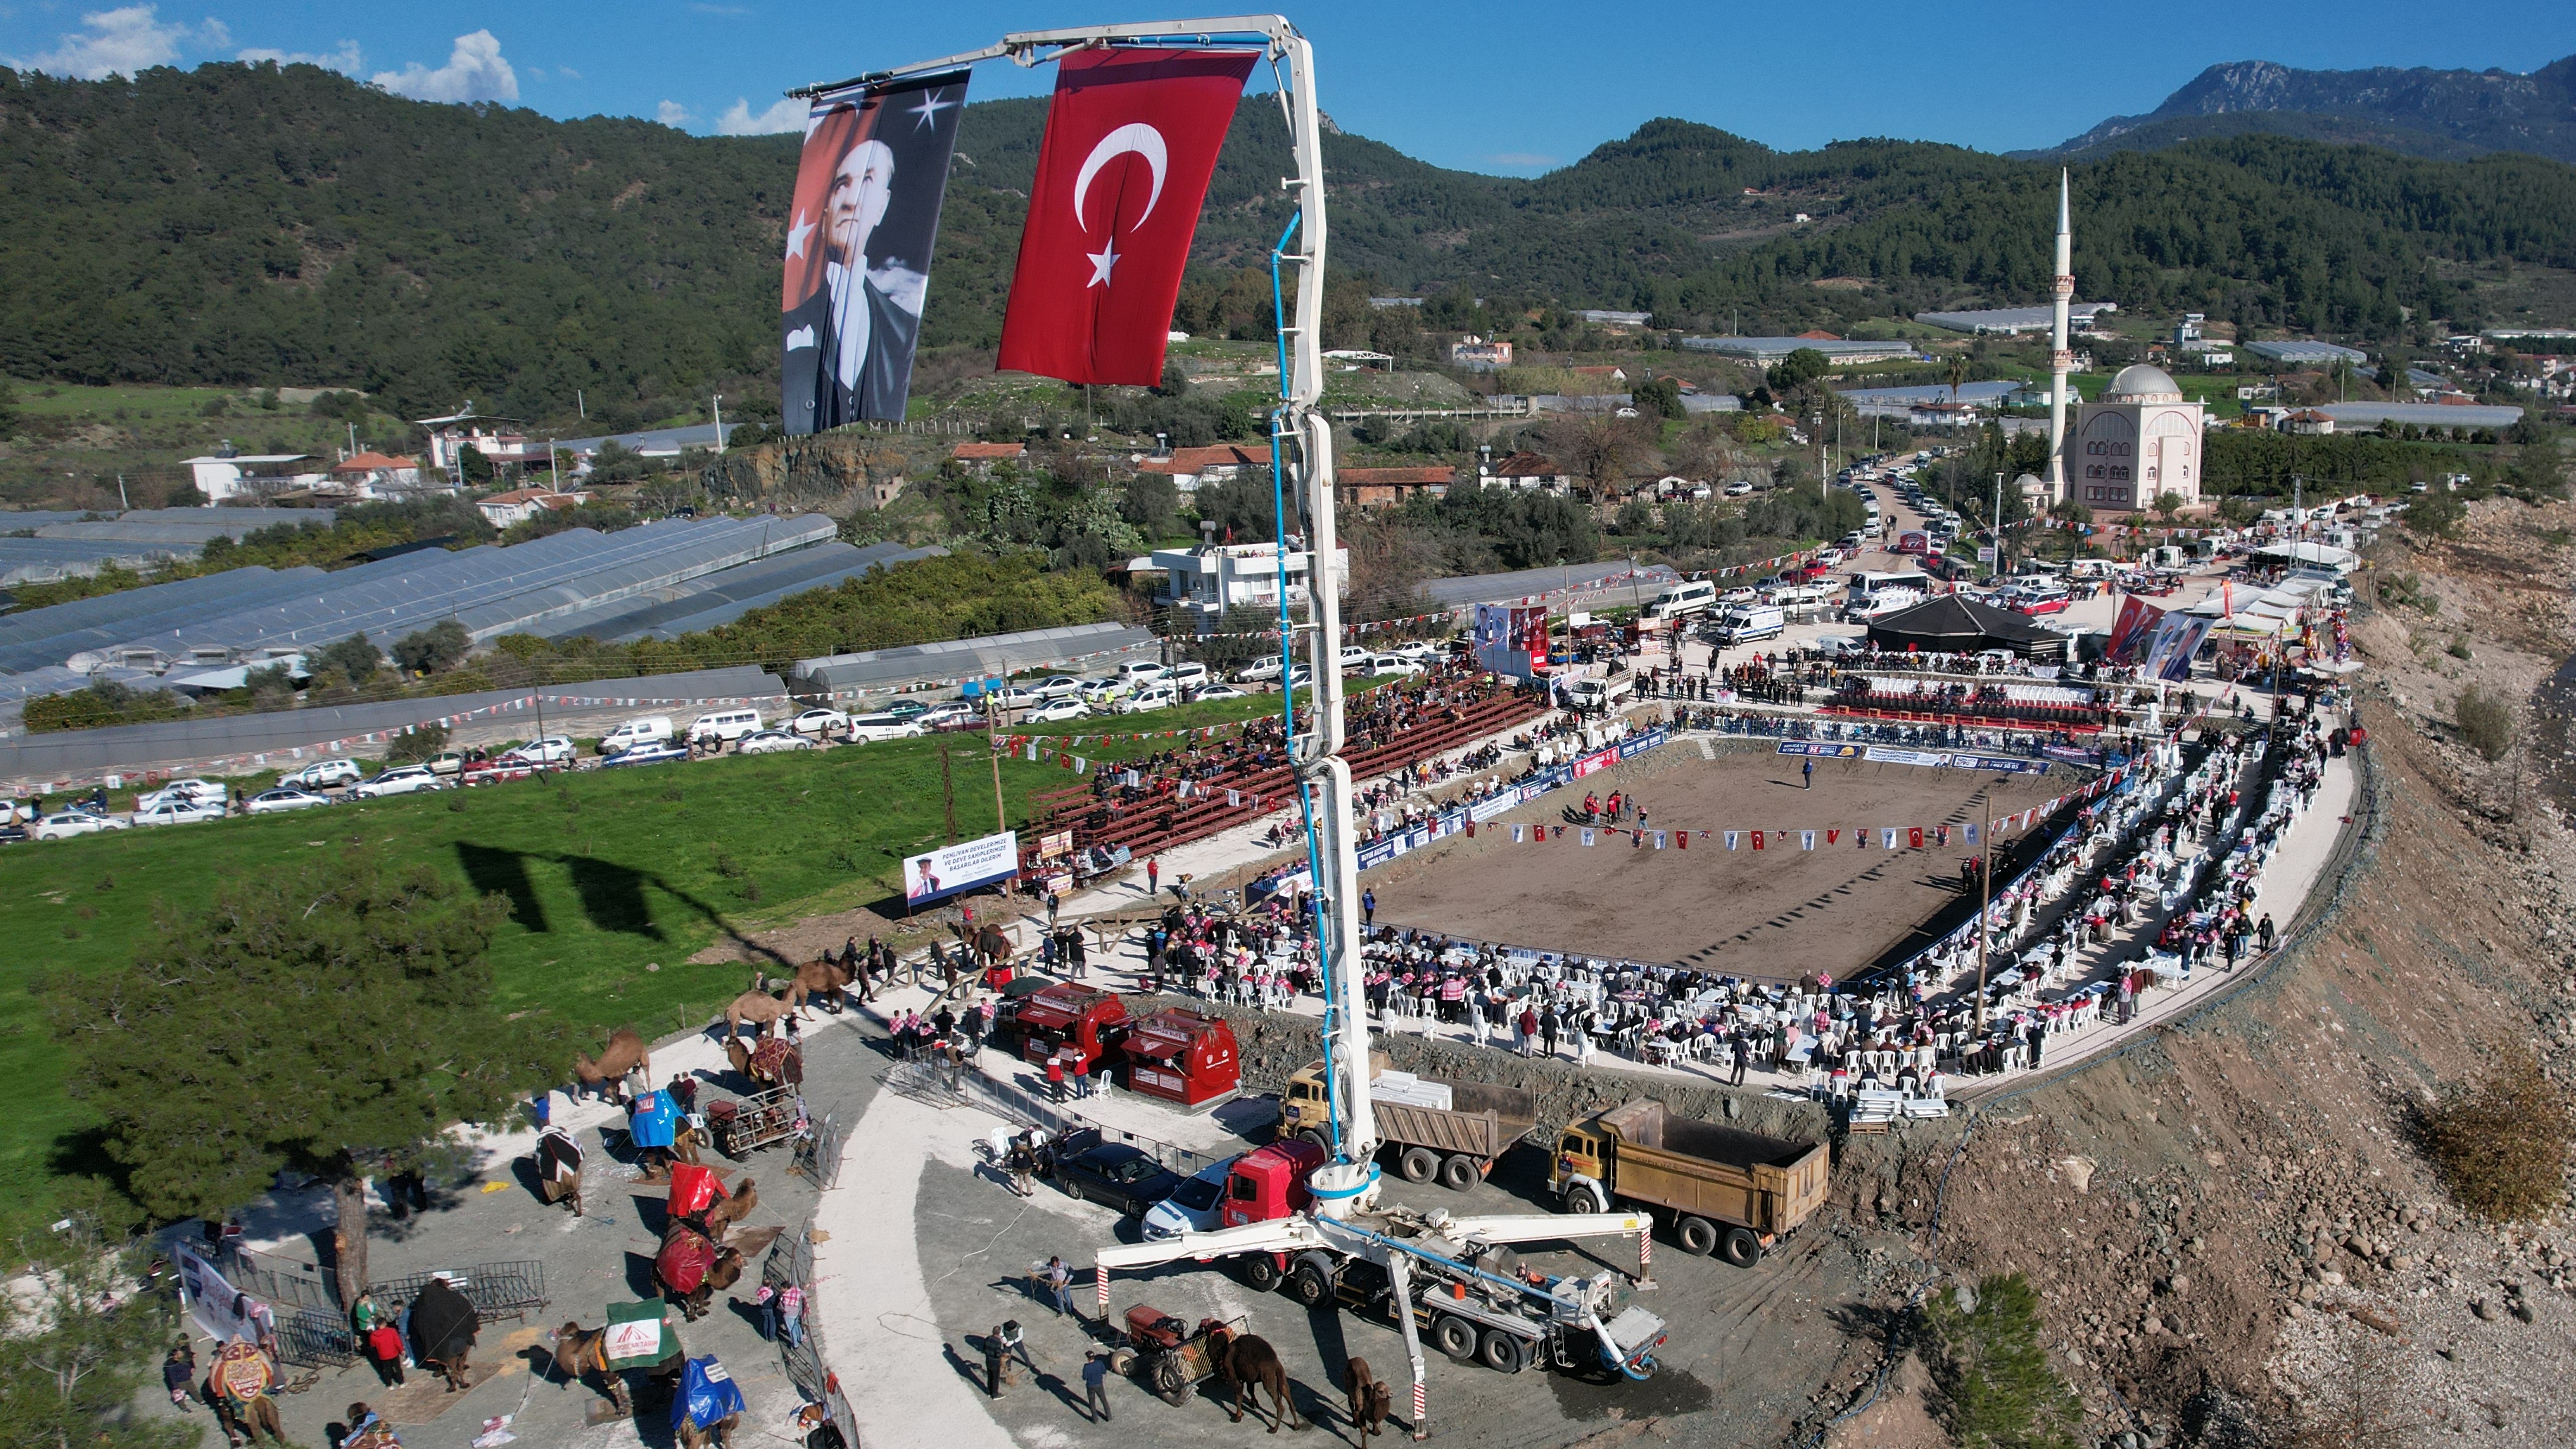 Folklorik Deve Güreşi, Toptaş Arena Folklorik Deve Gösteri Sahası’nda Gerçekleşti (2)